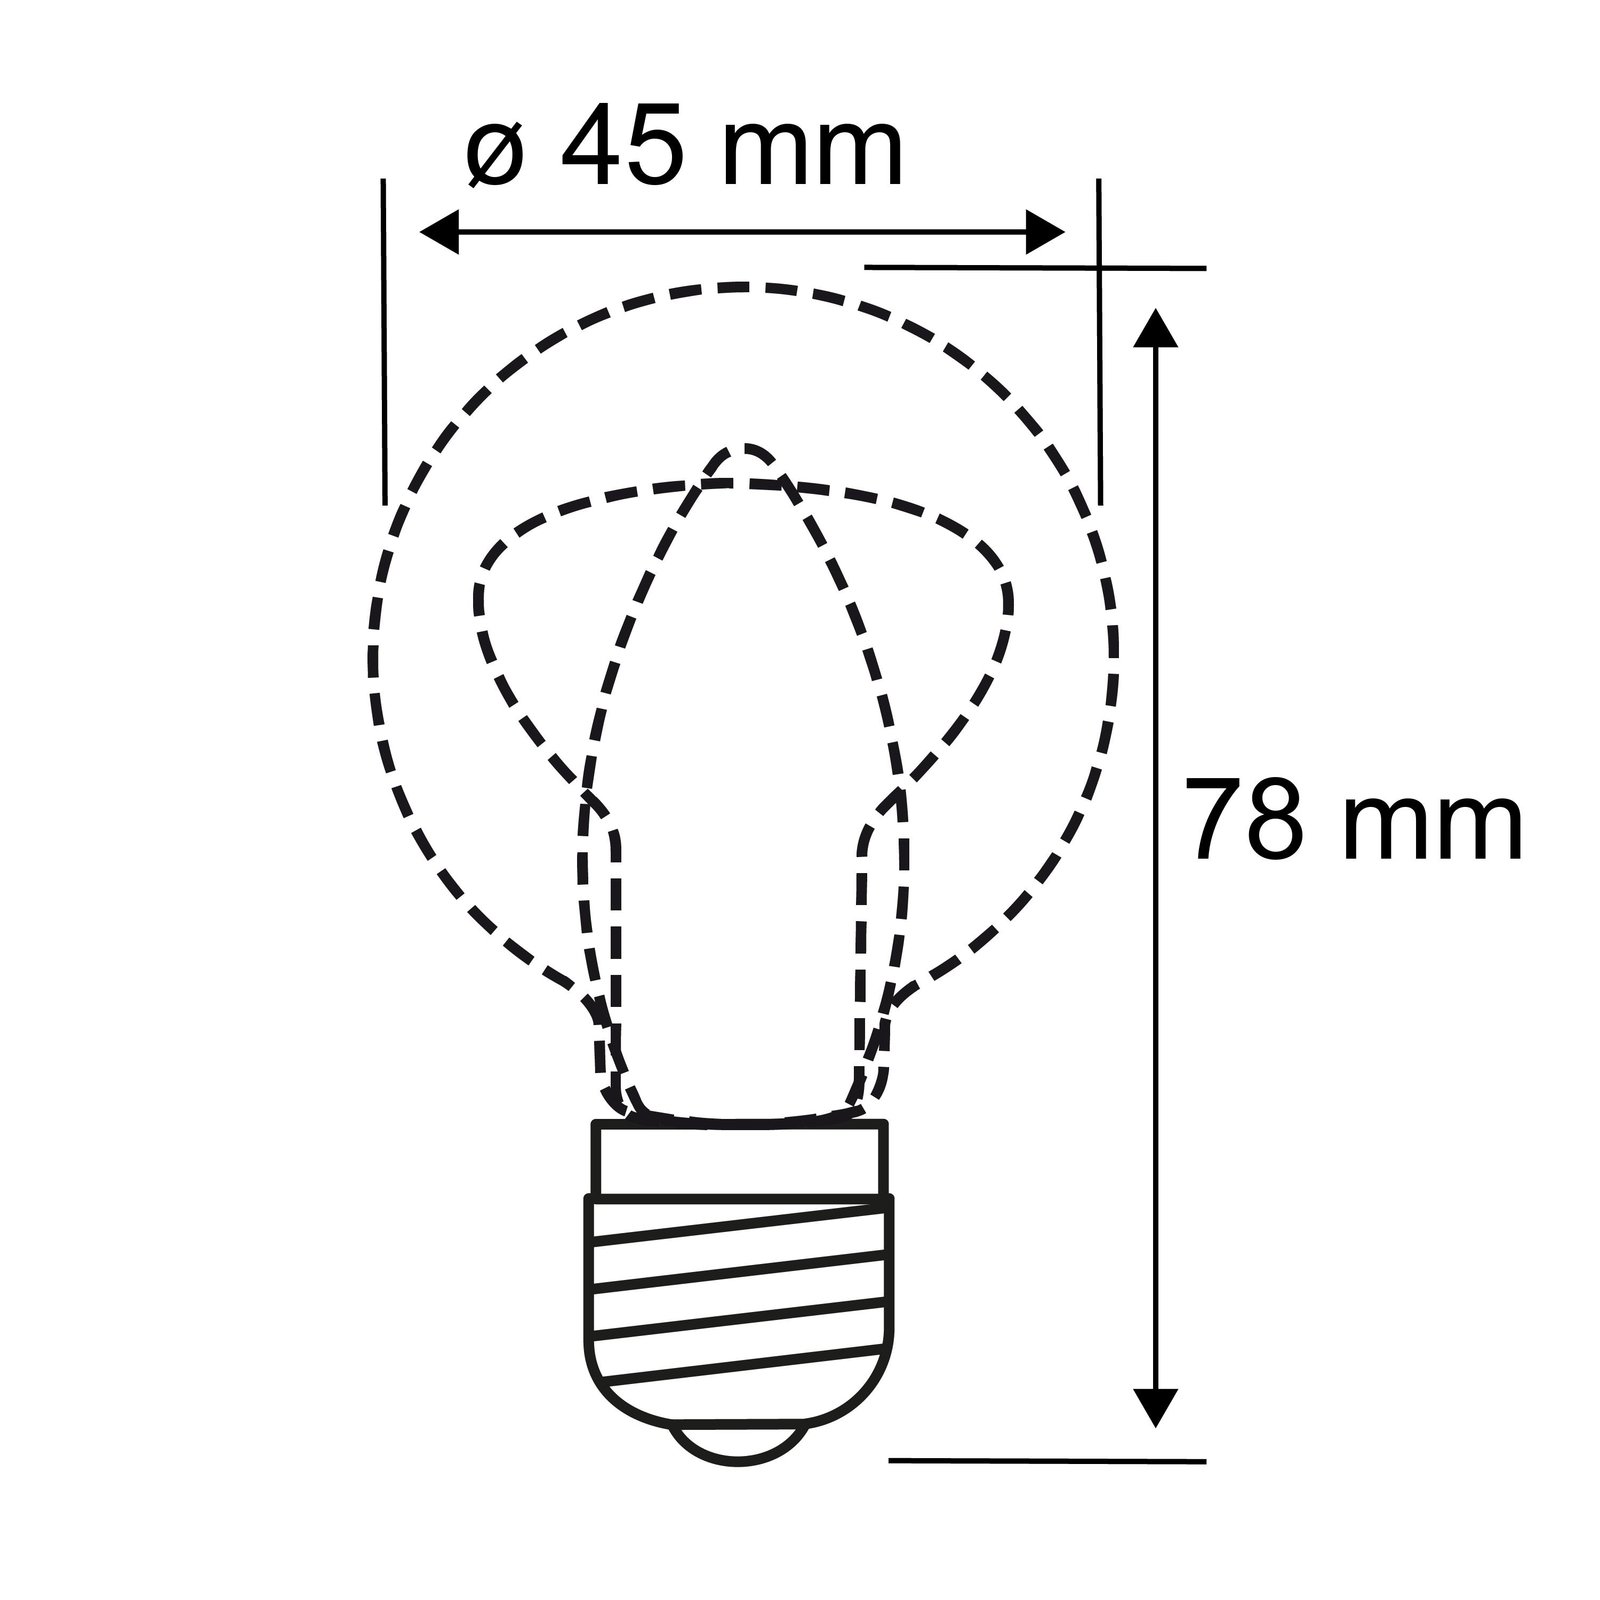 Paulmann ampoule goutte LED E14 2,6 W 827